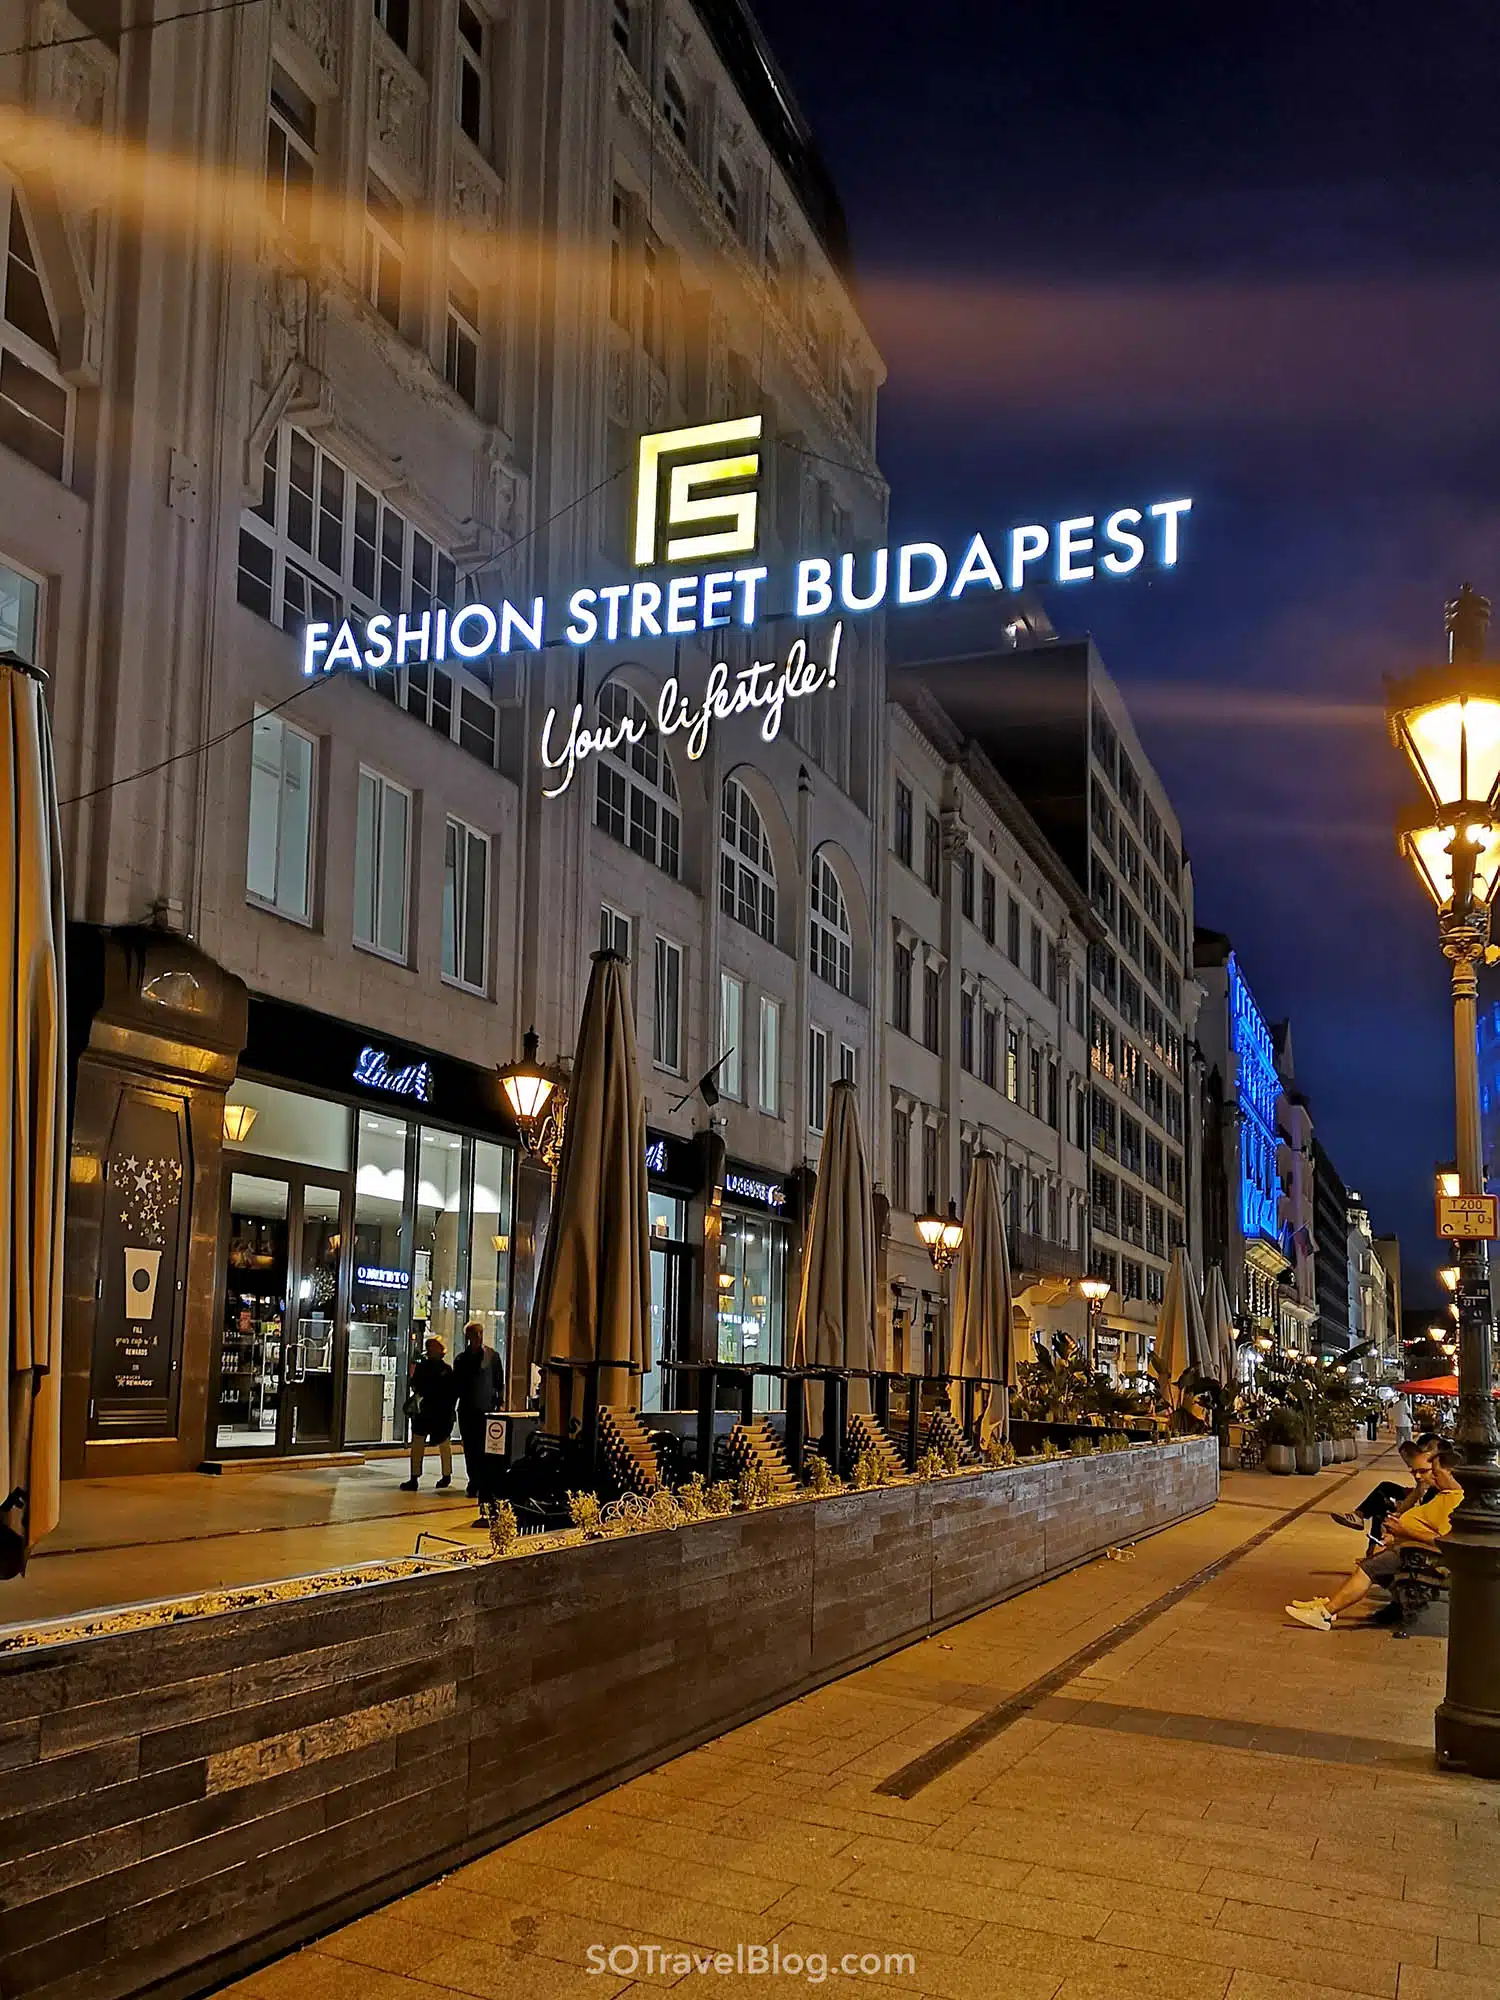 שופינג בבודפשט - רחוב האופנה